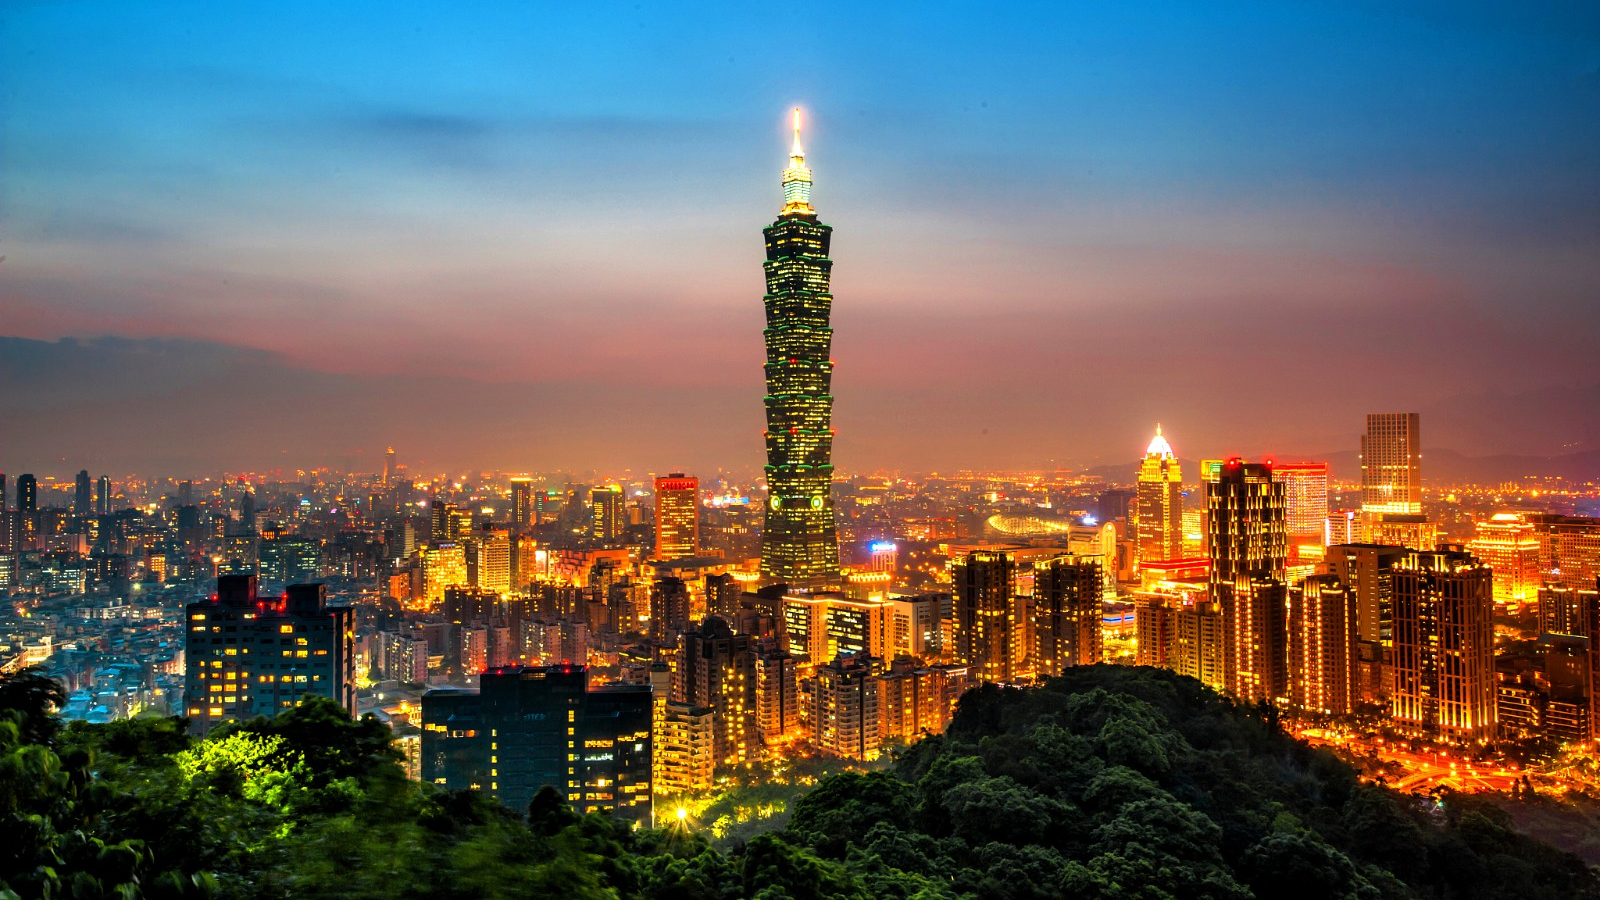 Night view of Taipei, southeast China's Taiwan region. /CFP